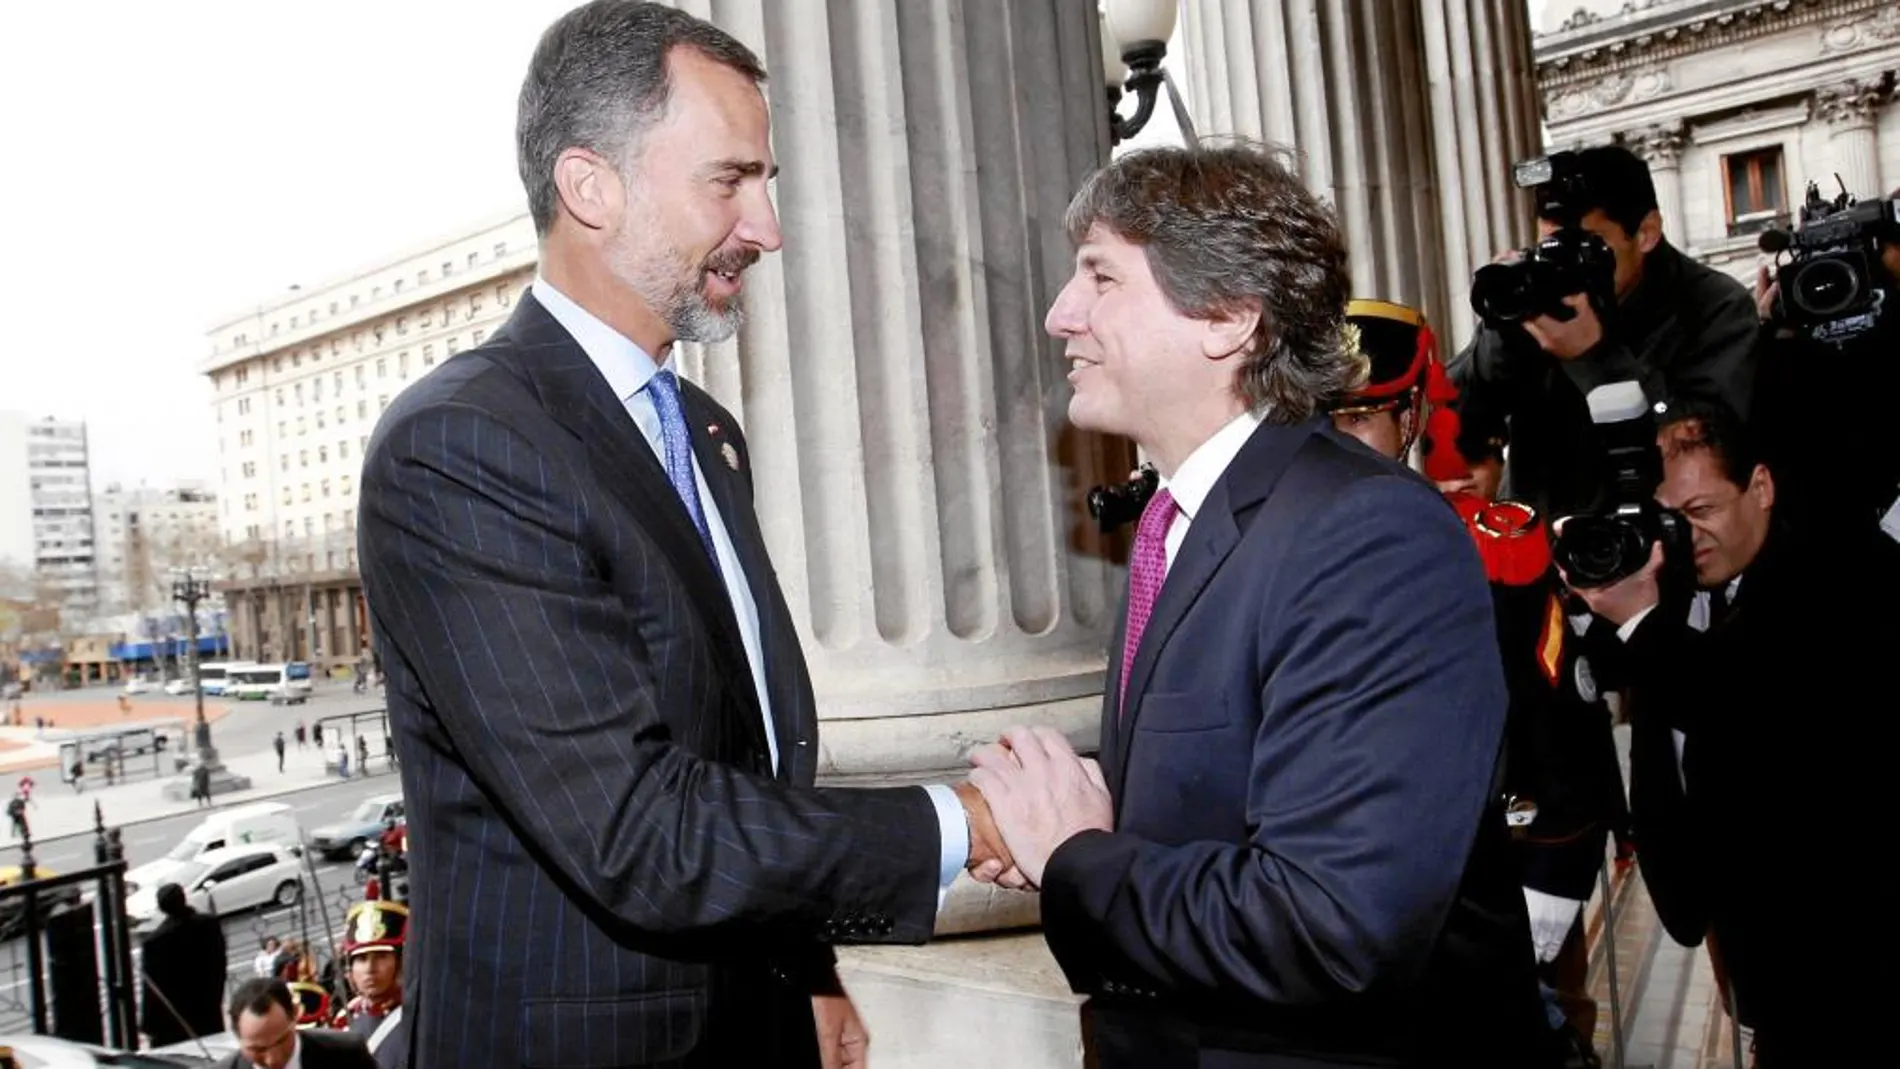 Don Felipe fue recibido por el vicepresidente argentino, Amado Boudou